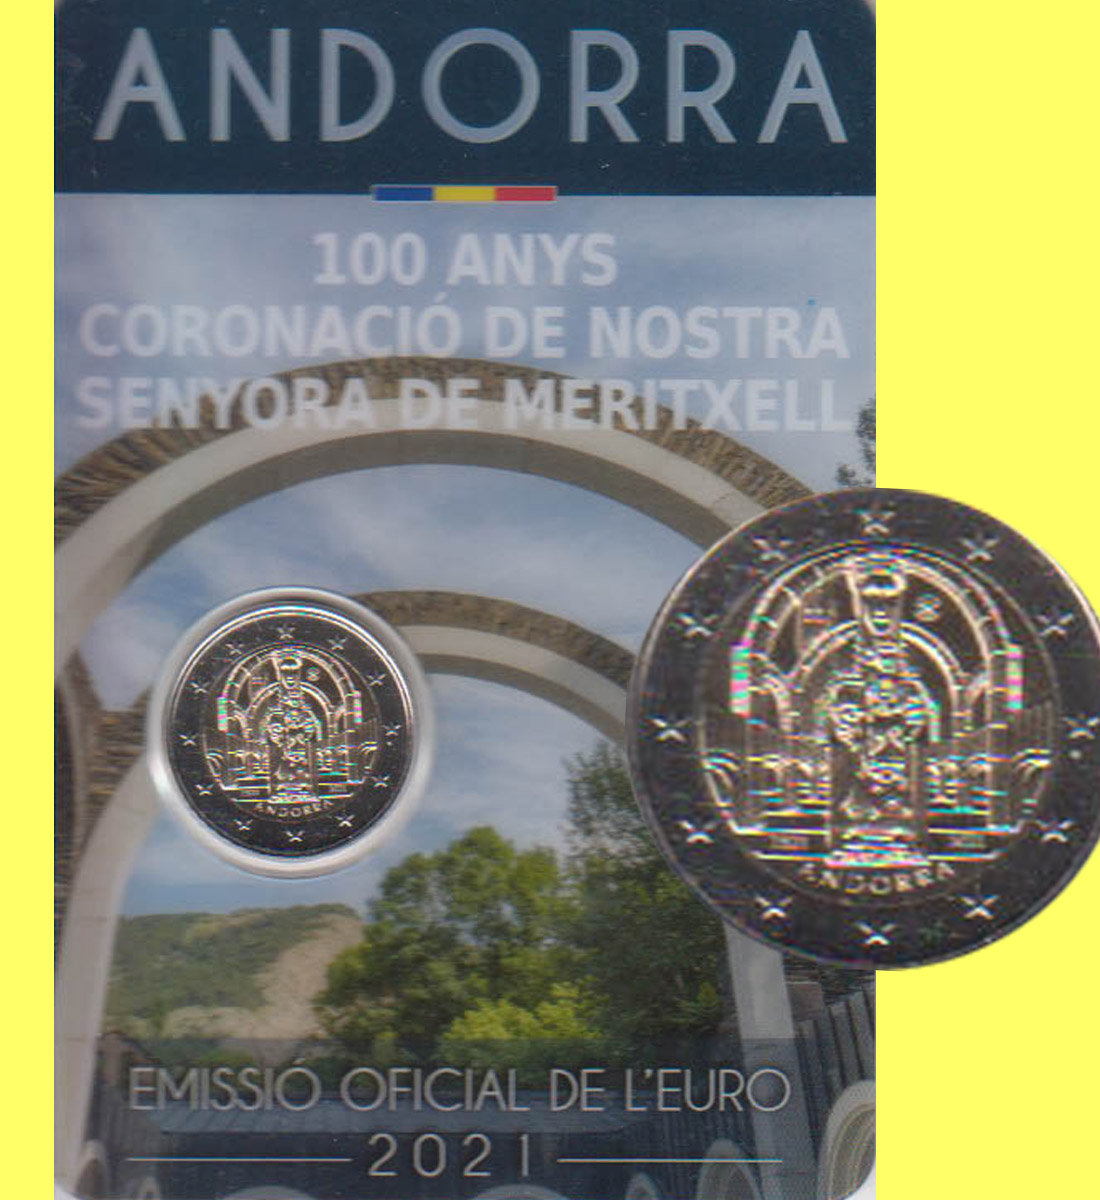  Offiz. 2 Euro-Sondermünze Andorra *100 Jahre Krönung unserer lieben Frau Meritxell* 2021   